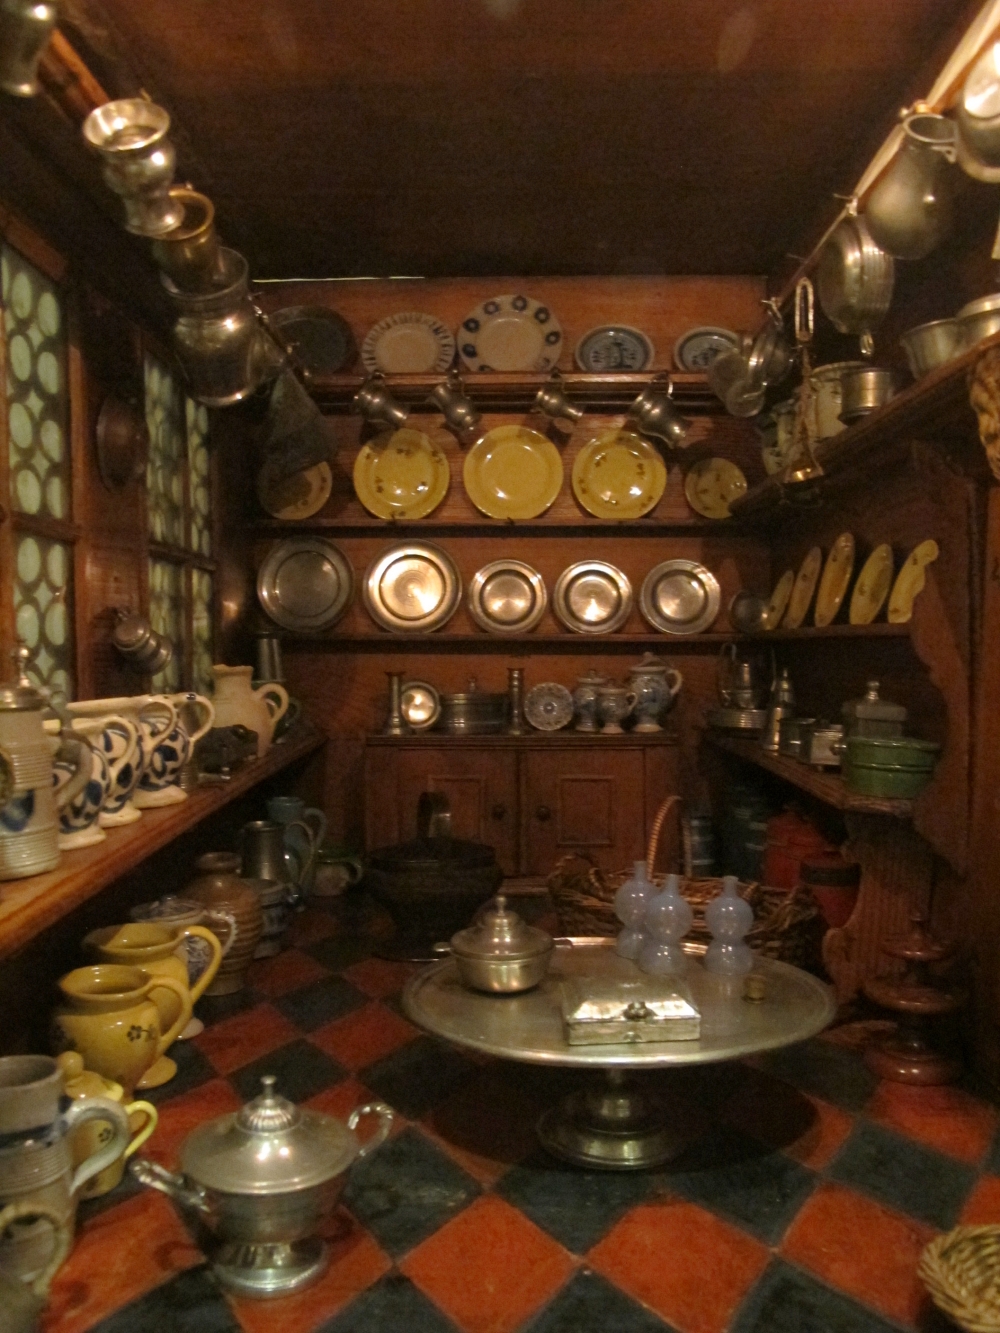 17th century Nuremberg kitchen